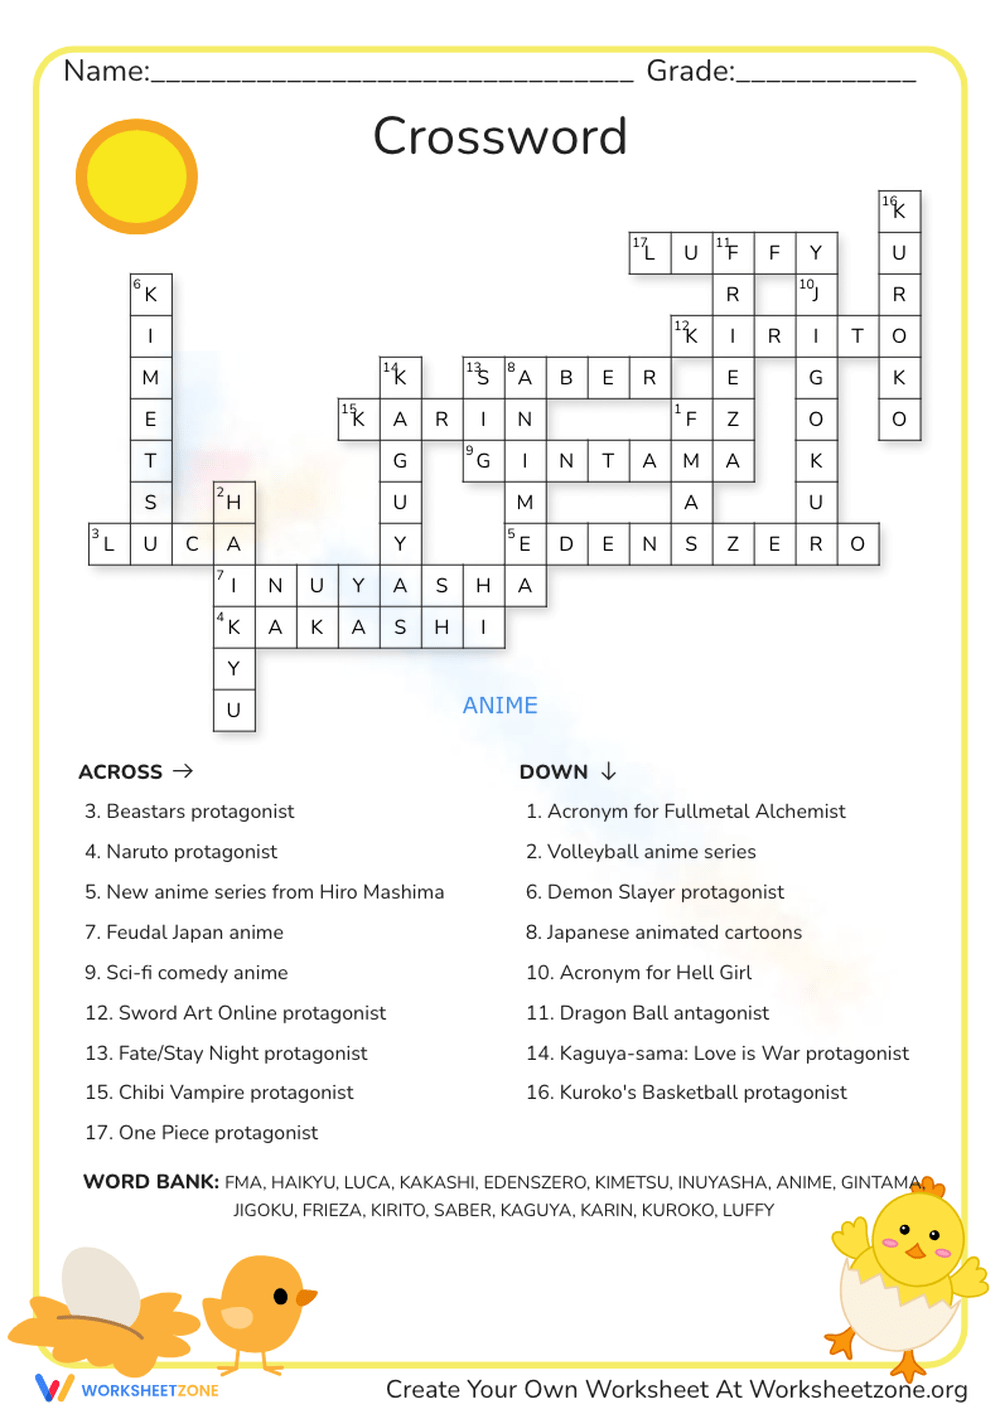 クロスワードパズル / Crossword Puzzle | Mafumafu Wiki | Fandom